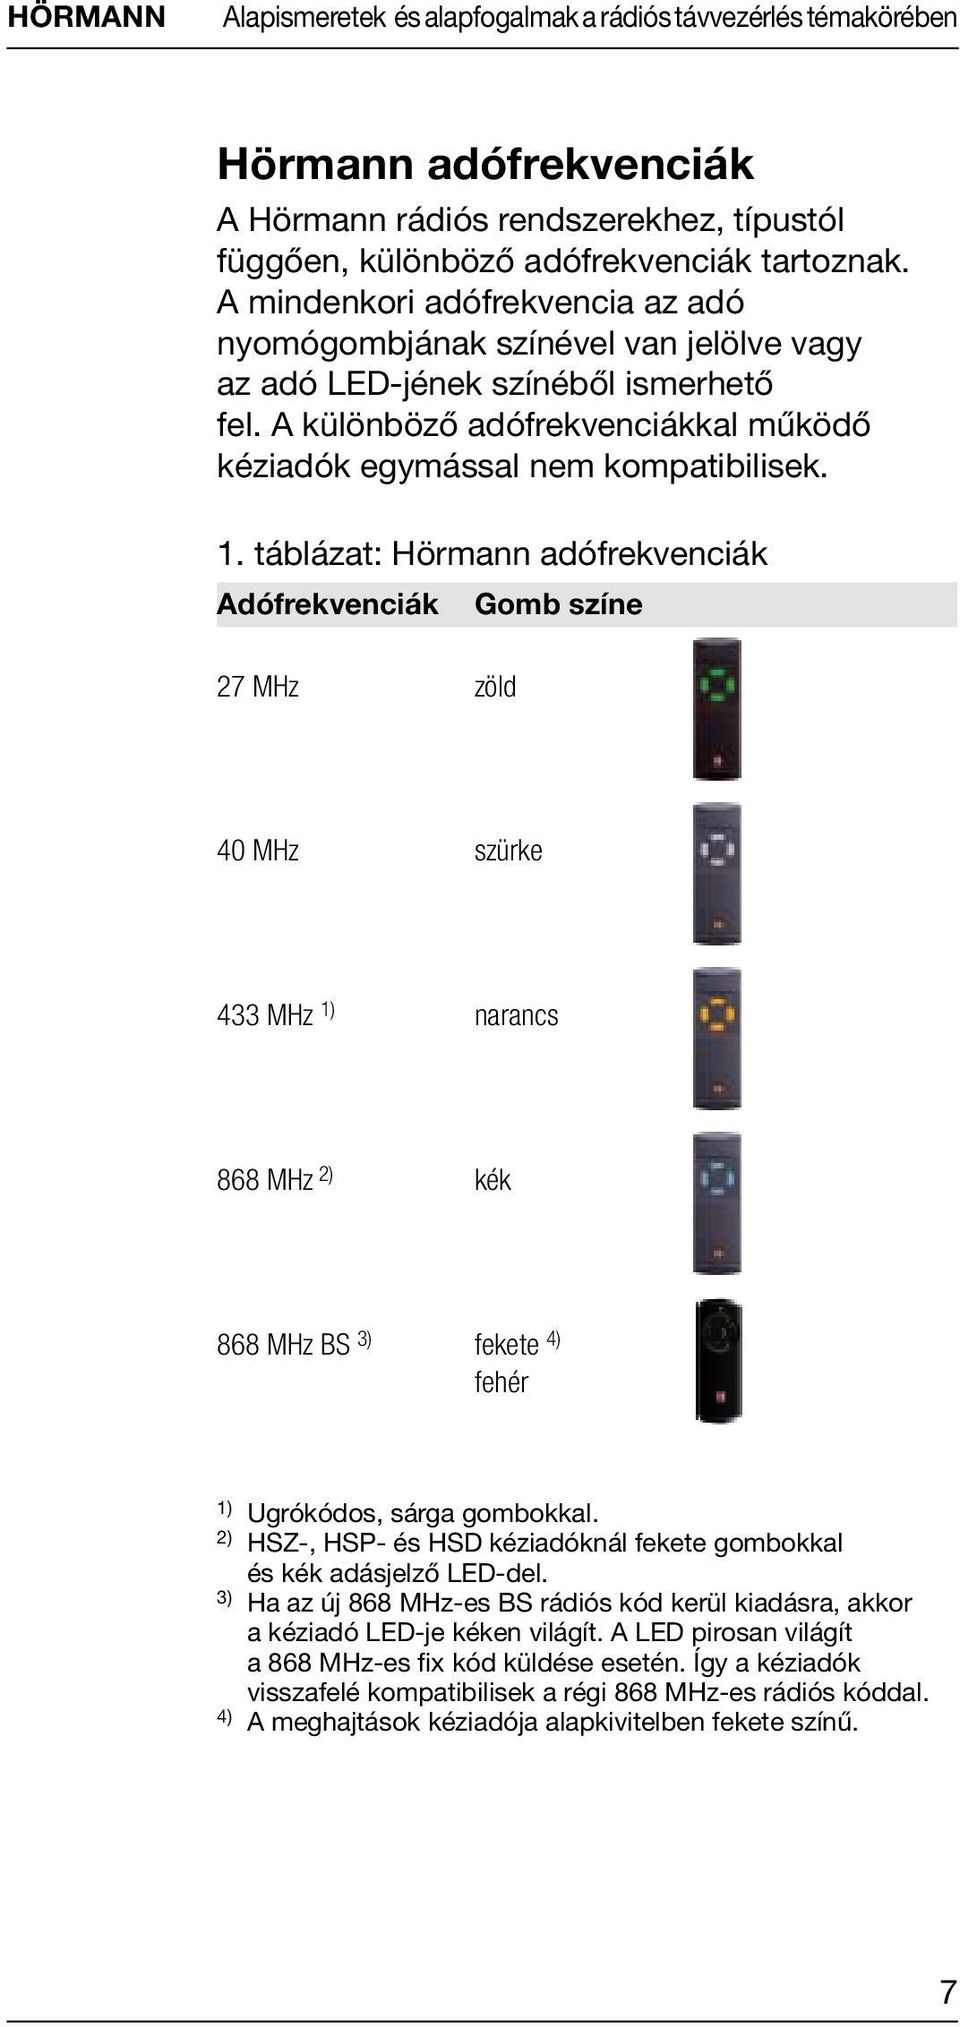 táblázat: Hörmann adófrekvenciák Adófrekvenciák 27 MHz zöld Gomb színe 40 MHz szürke 433 MHz 1) narancs 868 MHz 2) kék 868 MHz BS 3) fekete 4) fehér 1) Ugrókódos, sárga gombokkal.